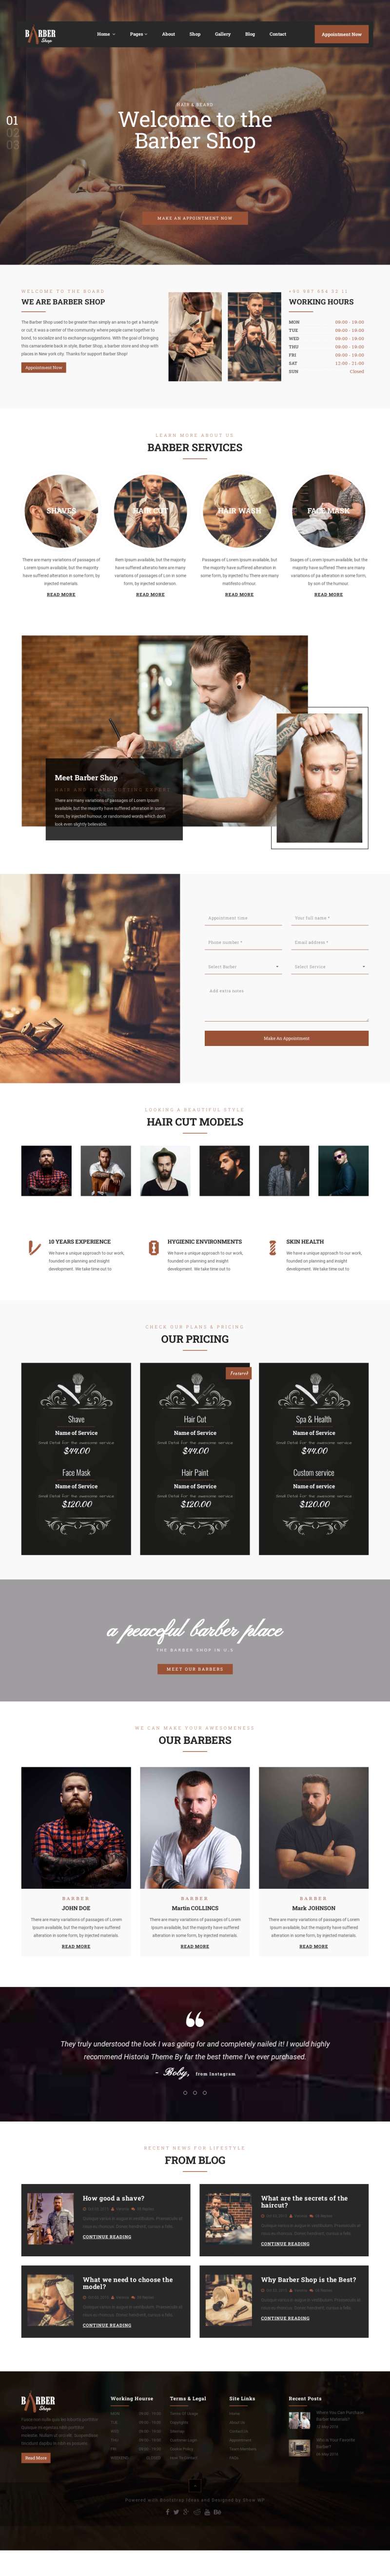 黑色大气的美发沙龙发型设计网站html模板